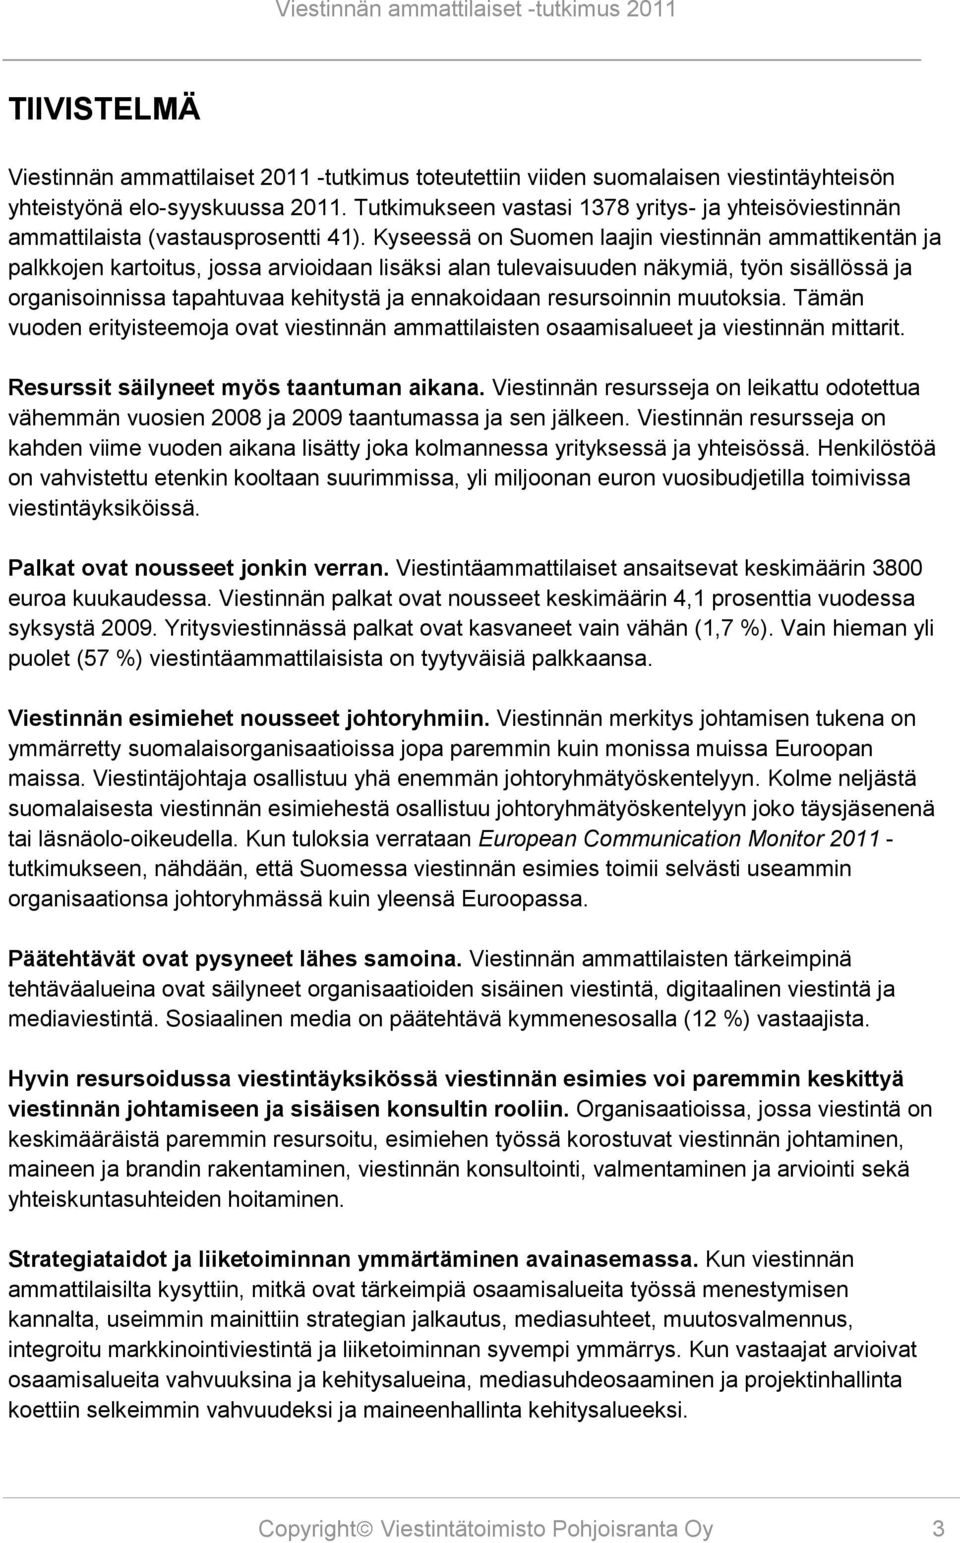 Kyseessä on Suomen laajin viestinnän ammattikentän ja palkkojen kartoitus, jossa arvioidaan lisäksi alan tulevaisuuden näkymiä, työn sisällössä ja organisoinnissa tapahtuvaa kehitystä ja ennakoidaan